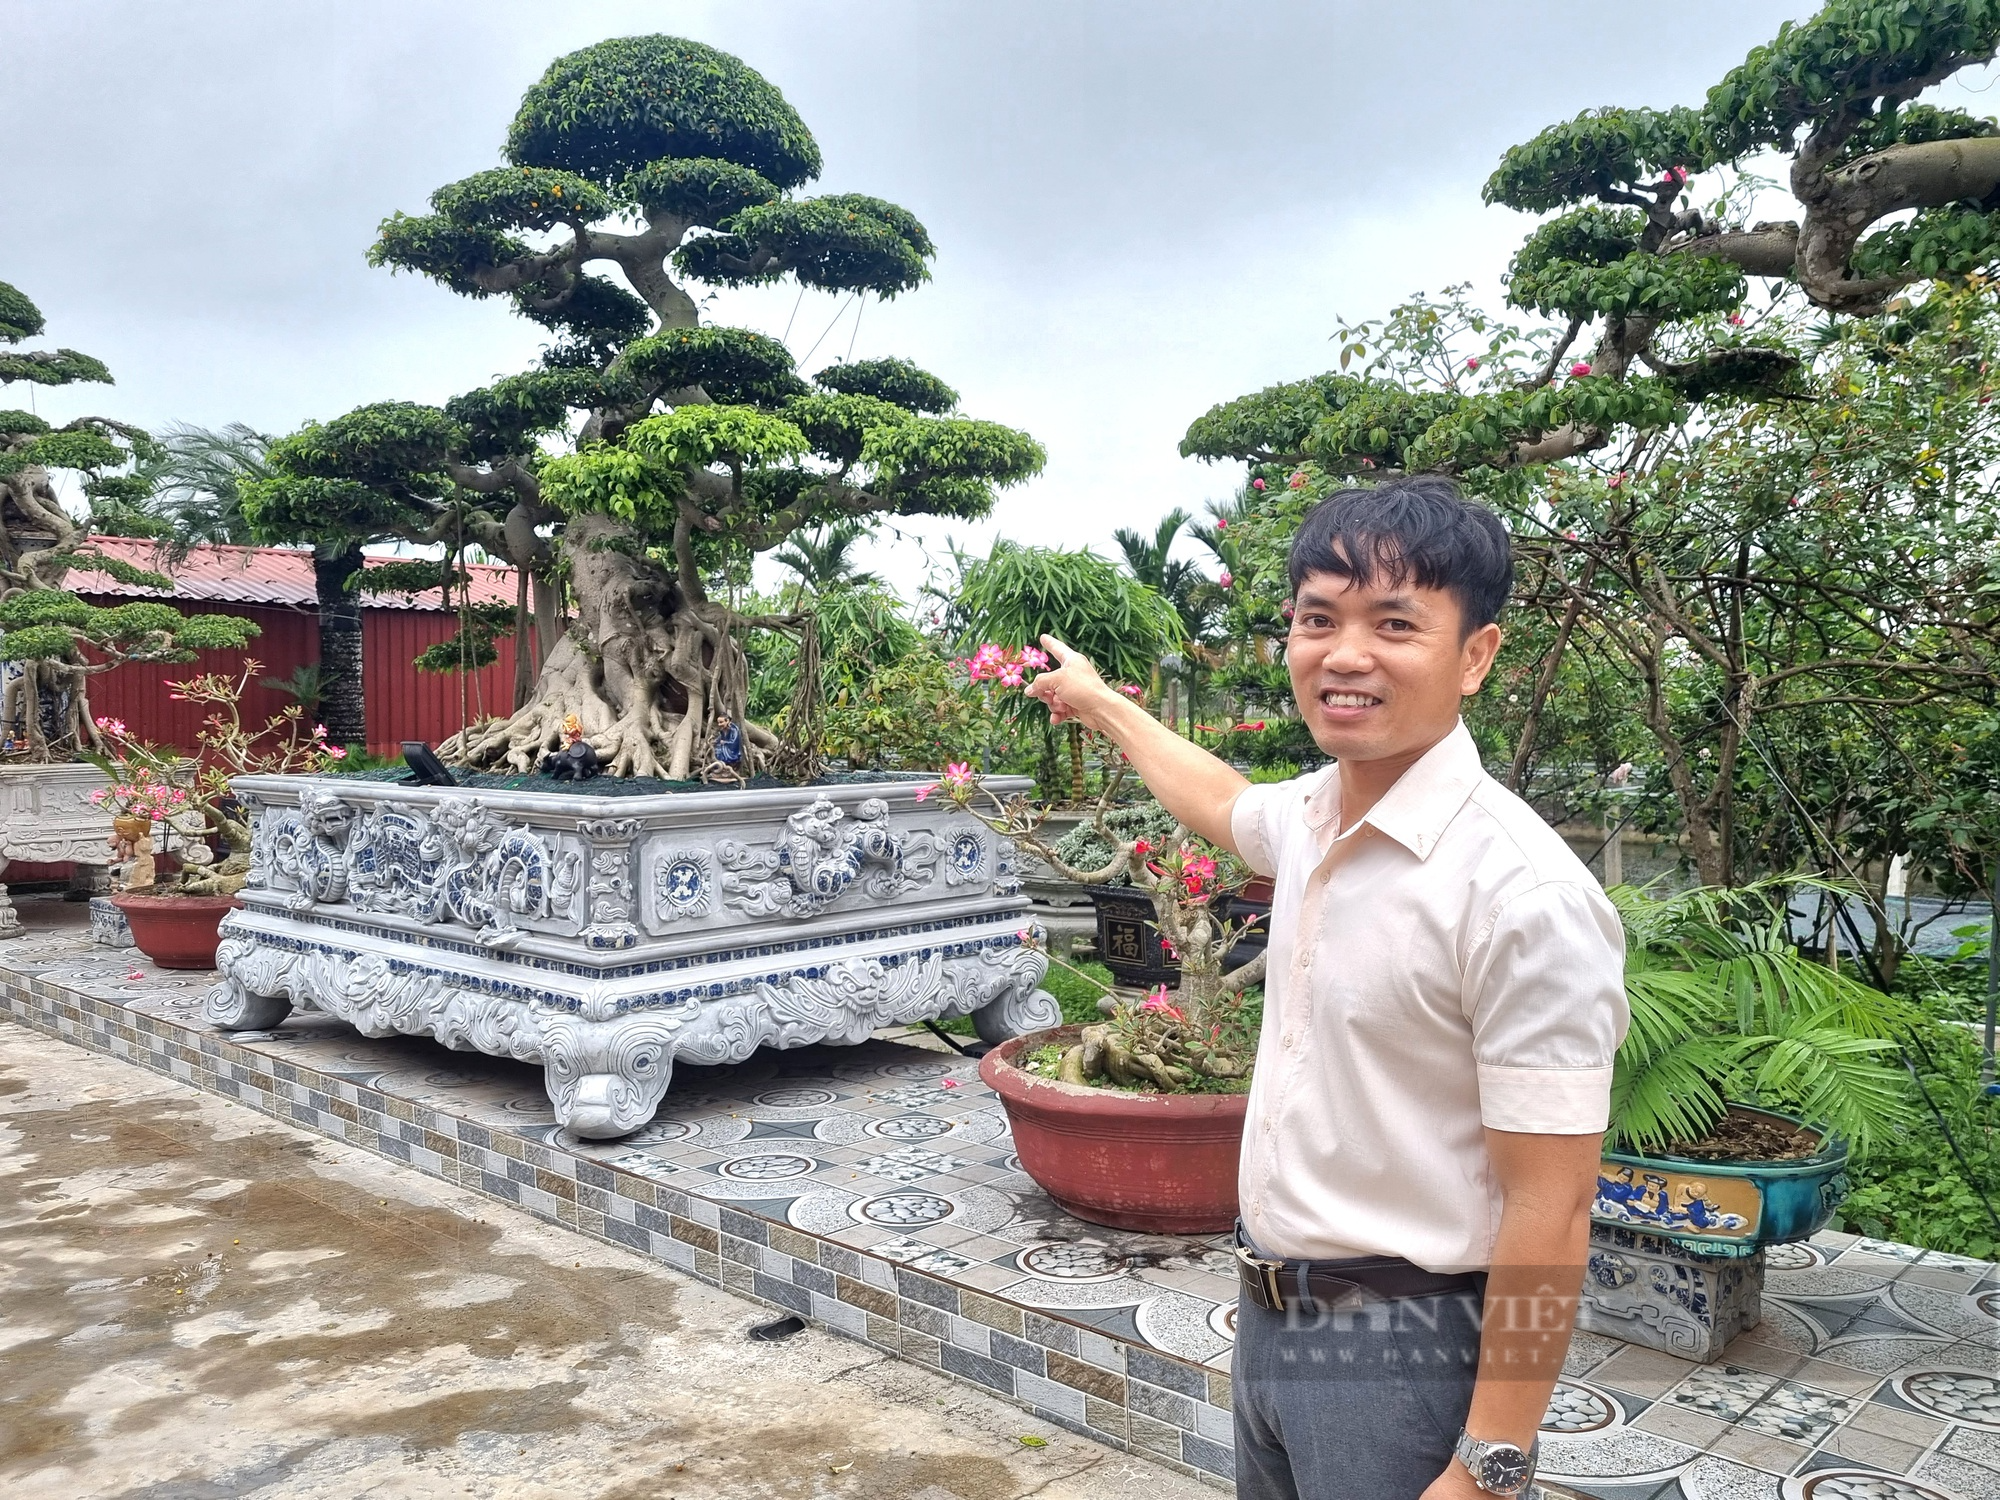 Cây sanh cổ hội tụ “cổ kỳ mỹ văn” giá gần 2 tỉ đồng ở Ninh Bình - Ảnh 2.